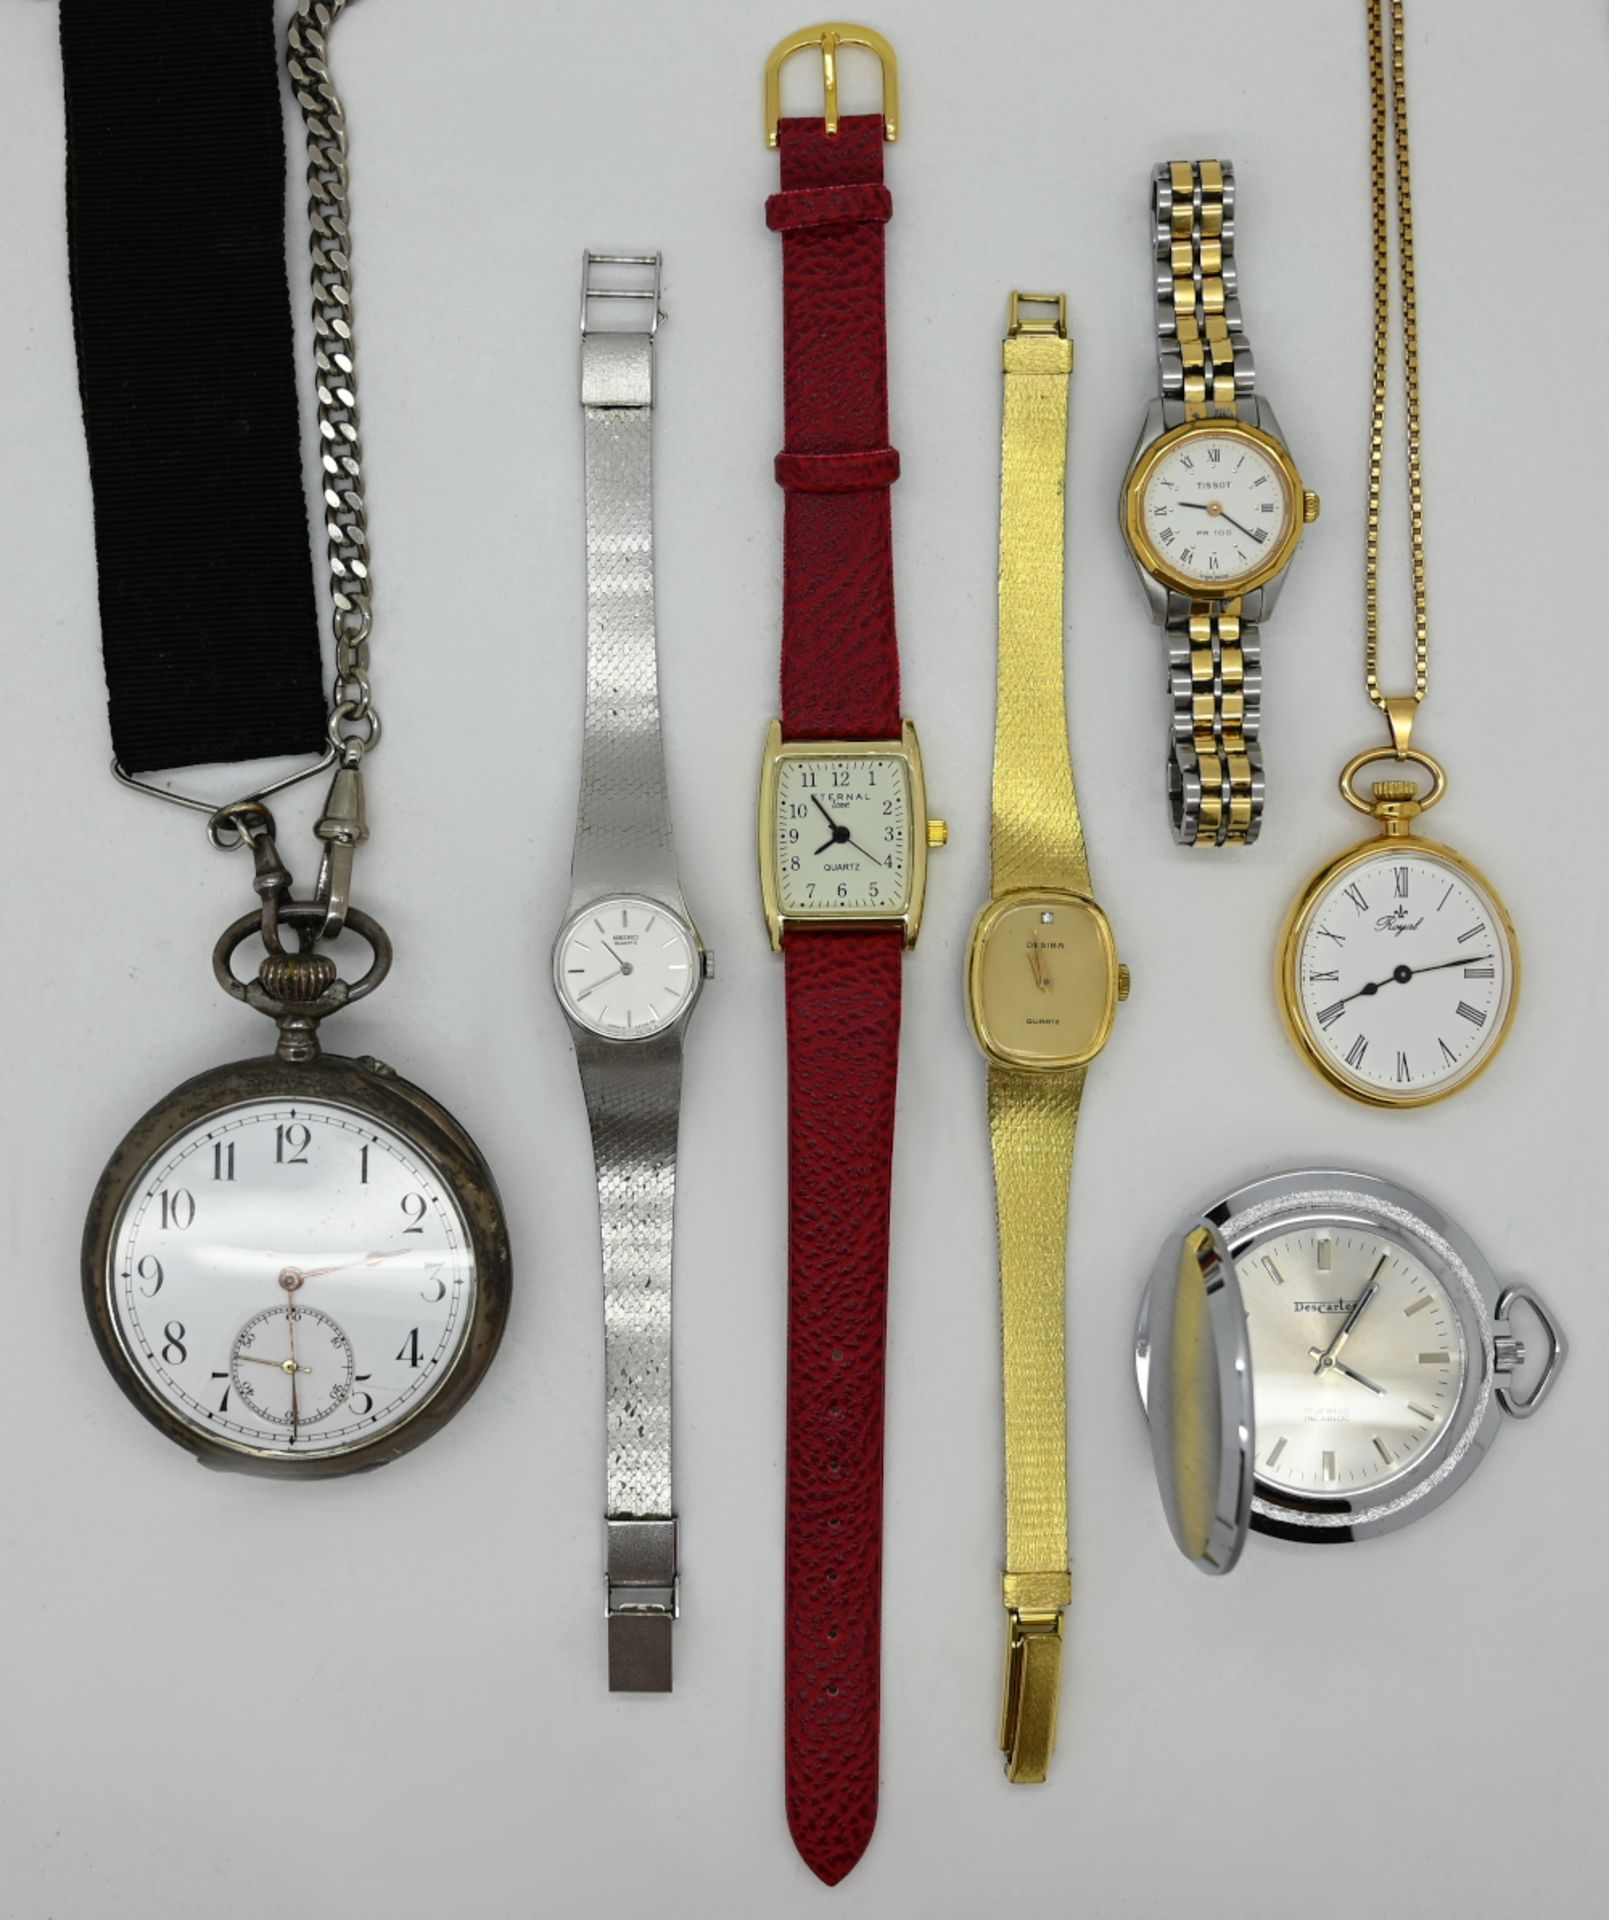 1 Taschenuhr Silber 800, um 1900, sowie verschiedene Armbanduhren u.a., Metall z.T. vergoldet, - Bild 2 aus 2